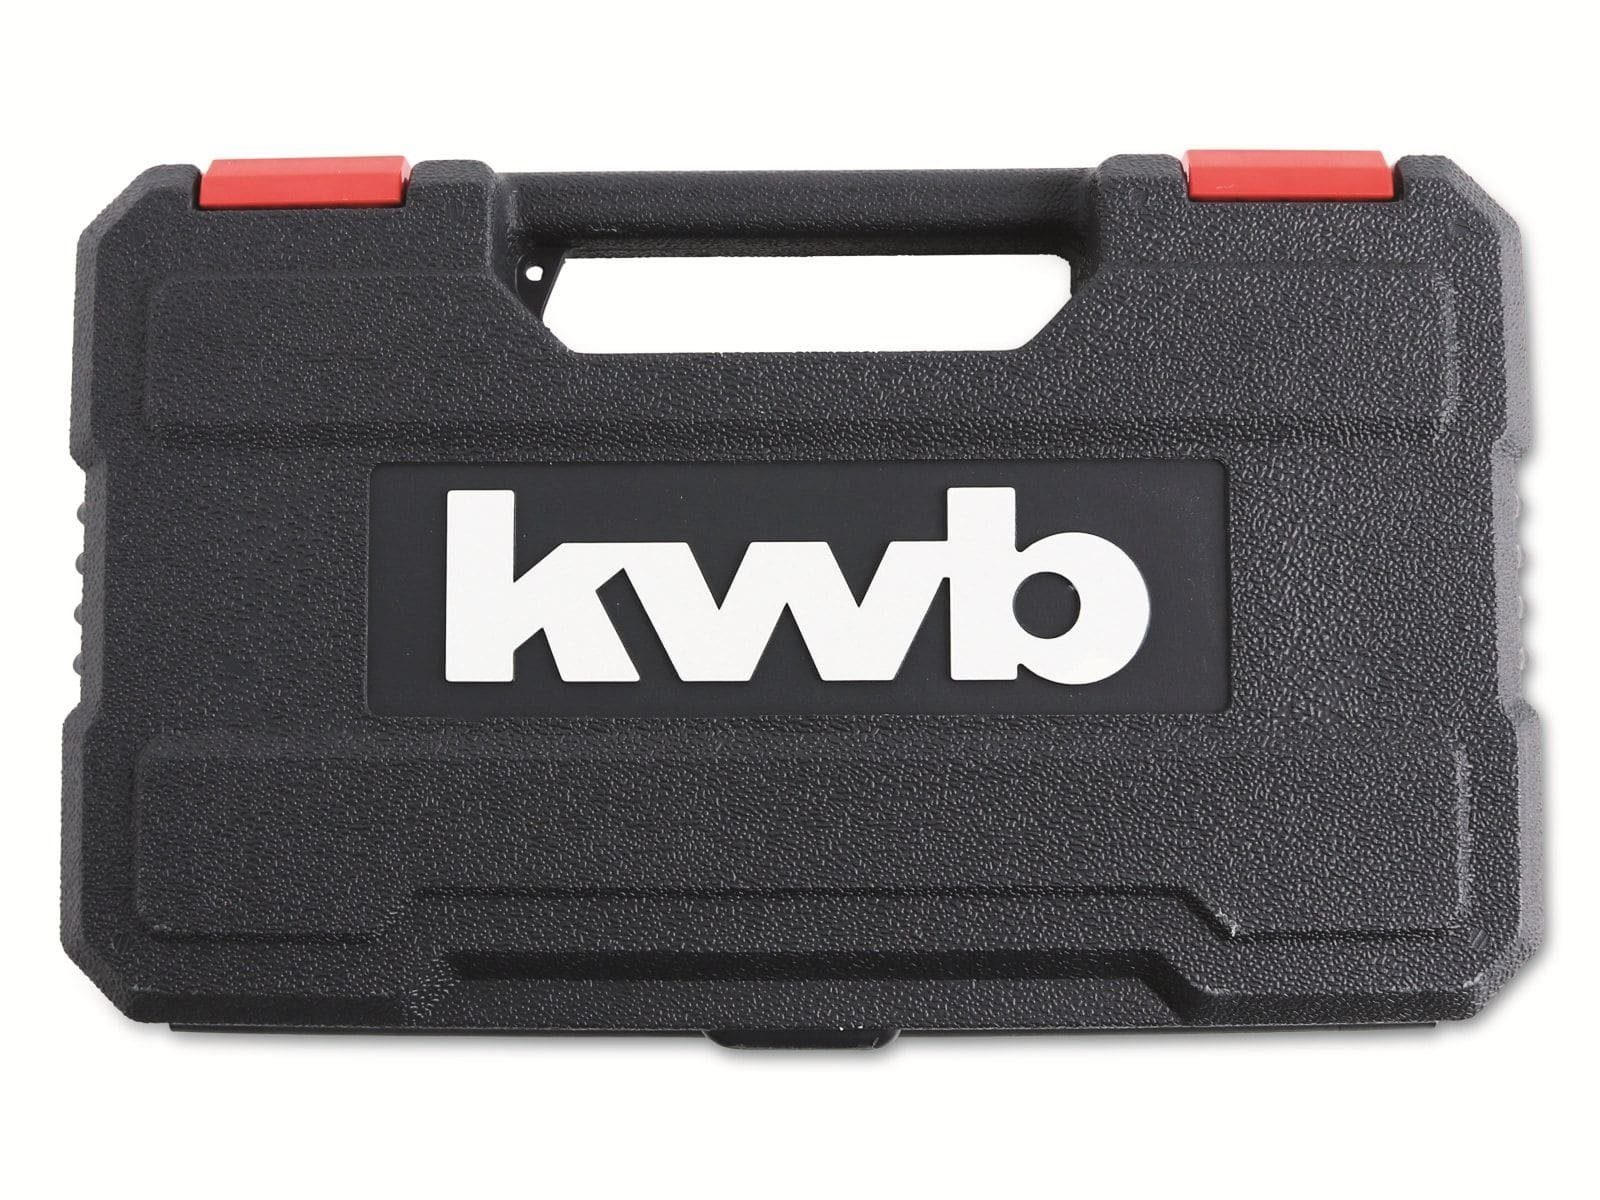 26-teilig Bit-Bohrersatz und Bitset Bohrer- KWB kwb 240390 Holz, für